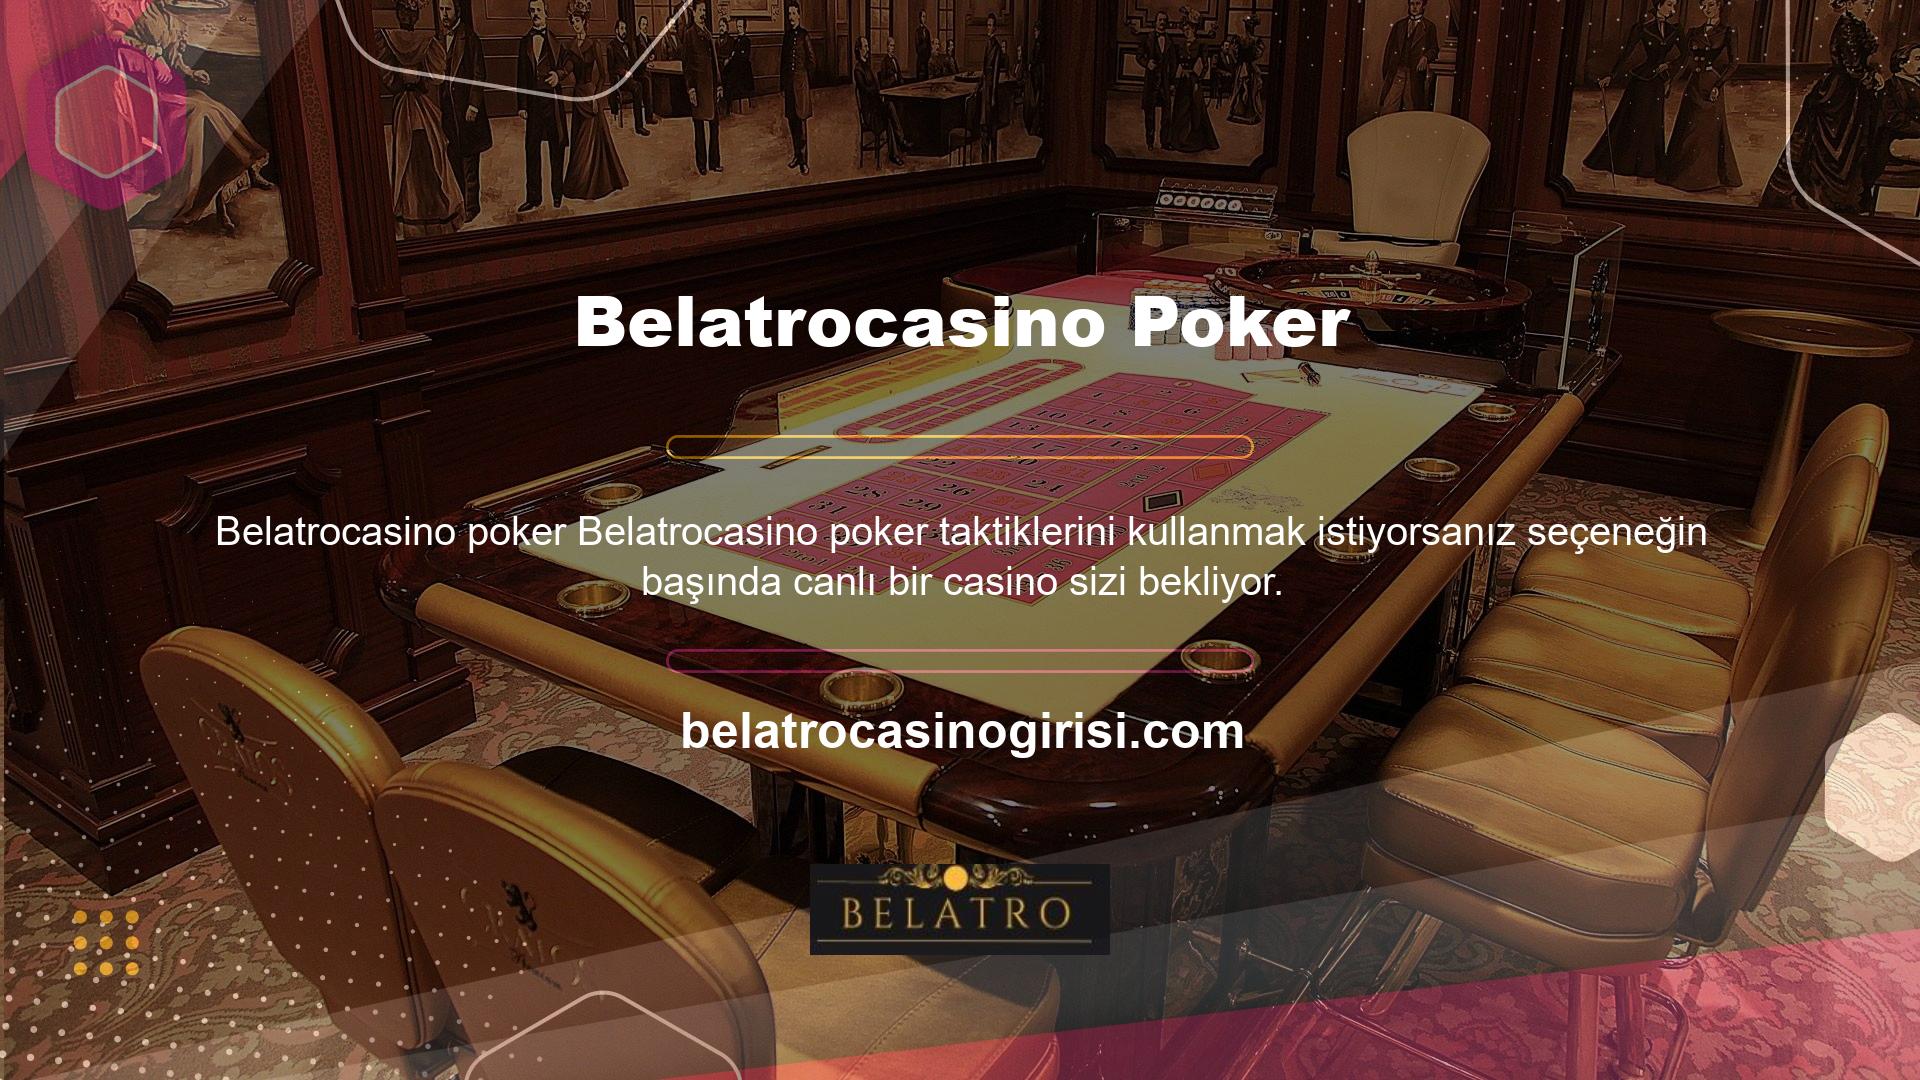 Canlı casino yayınlarını dağıtmak, burada bulunan poker oyunlarına da erişmenizi sağlar